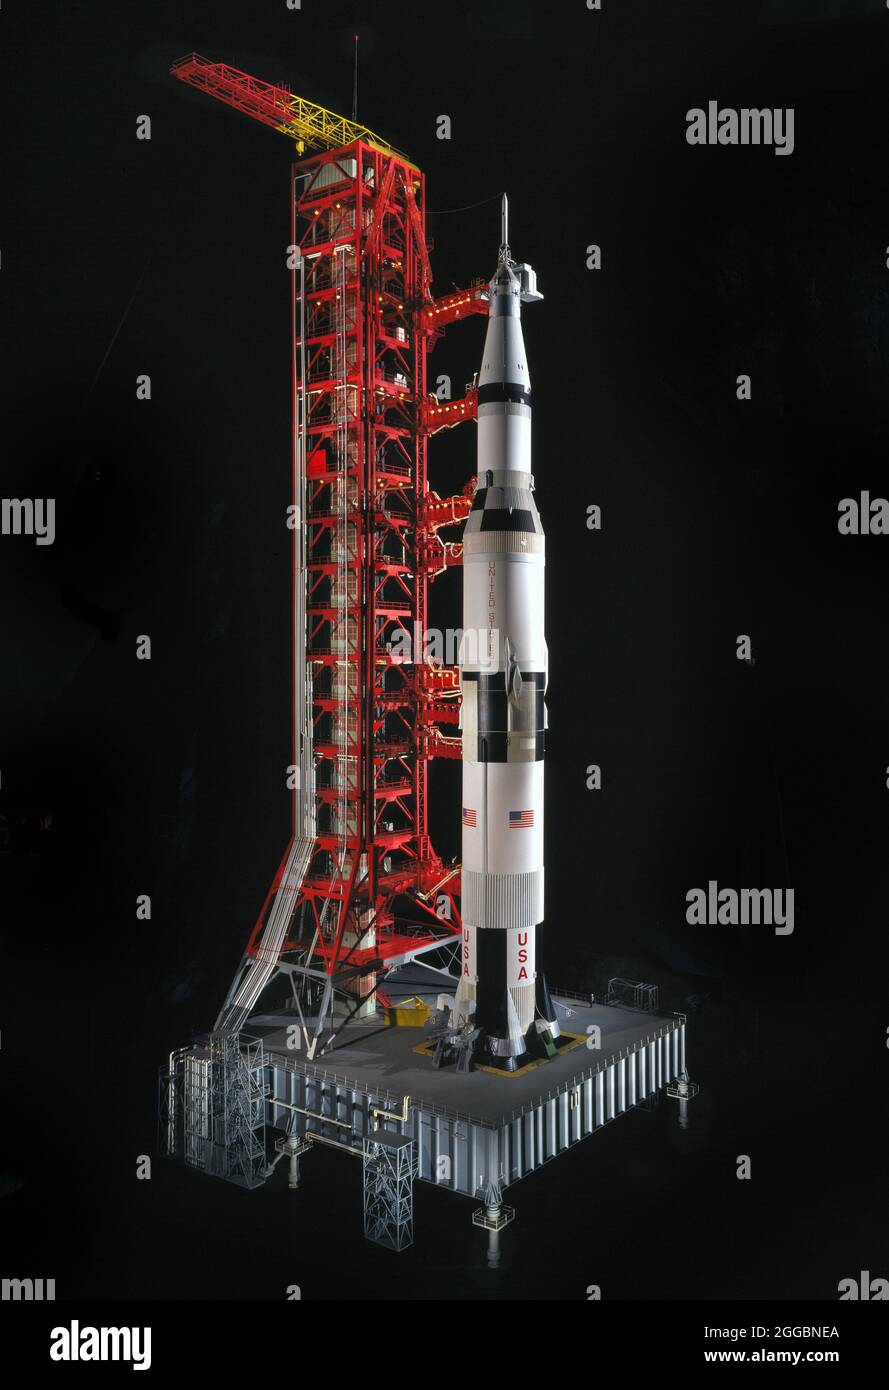 Modelo, Rocket, Saturno V, 1975. Este es un modelo a escala 1:34 del Saturno V y su torre de lanzamiento. El Saturno V fue uno de los varios cohetes desarrollados por la Administración Nacional de Aeronáutica y del Espacio para su uso en el programa Apolo. El vehículo de lanzamiento operacional más grande de América, Saturno V lanzó por primera vez una nave espacial tripulada Apollo en diciembre de 1968, cuando la tripulación del Apolo 8 fue colocada en órbita lunar. En julio de 1969, el cohete envió a los astronautas Neil Armstrong y Edward Aldrin, Jr. De Apolo 11 a la superficie de la luna, mientras que Michael Collins permaneció en órbita lunar. Saturno V fue utilizado en la RE Foto de stock